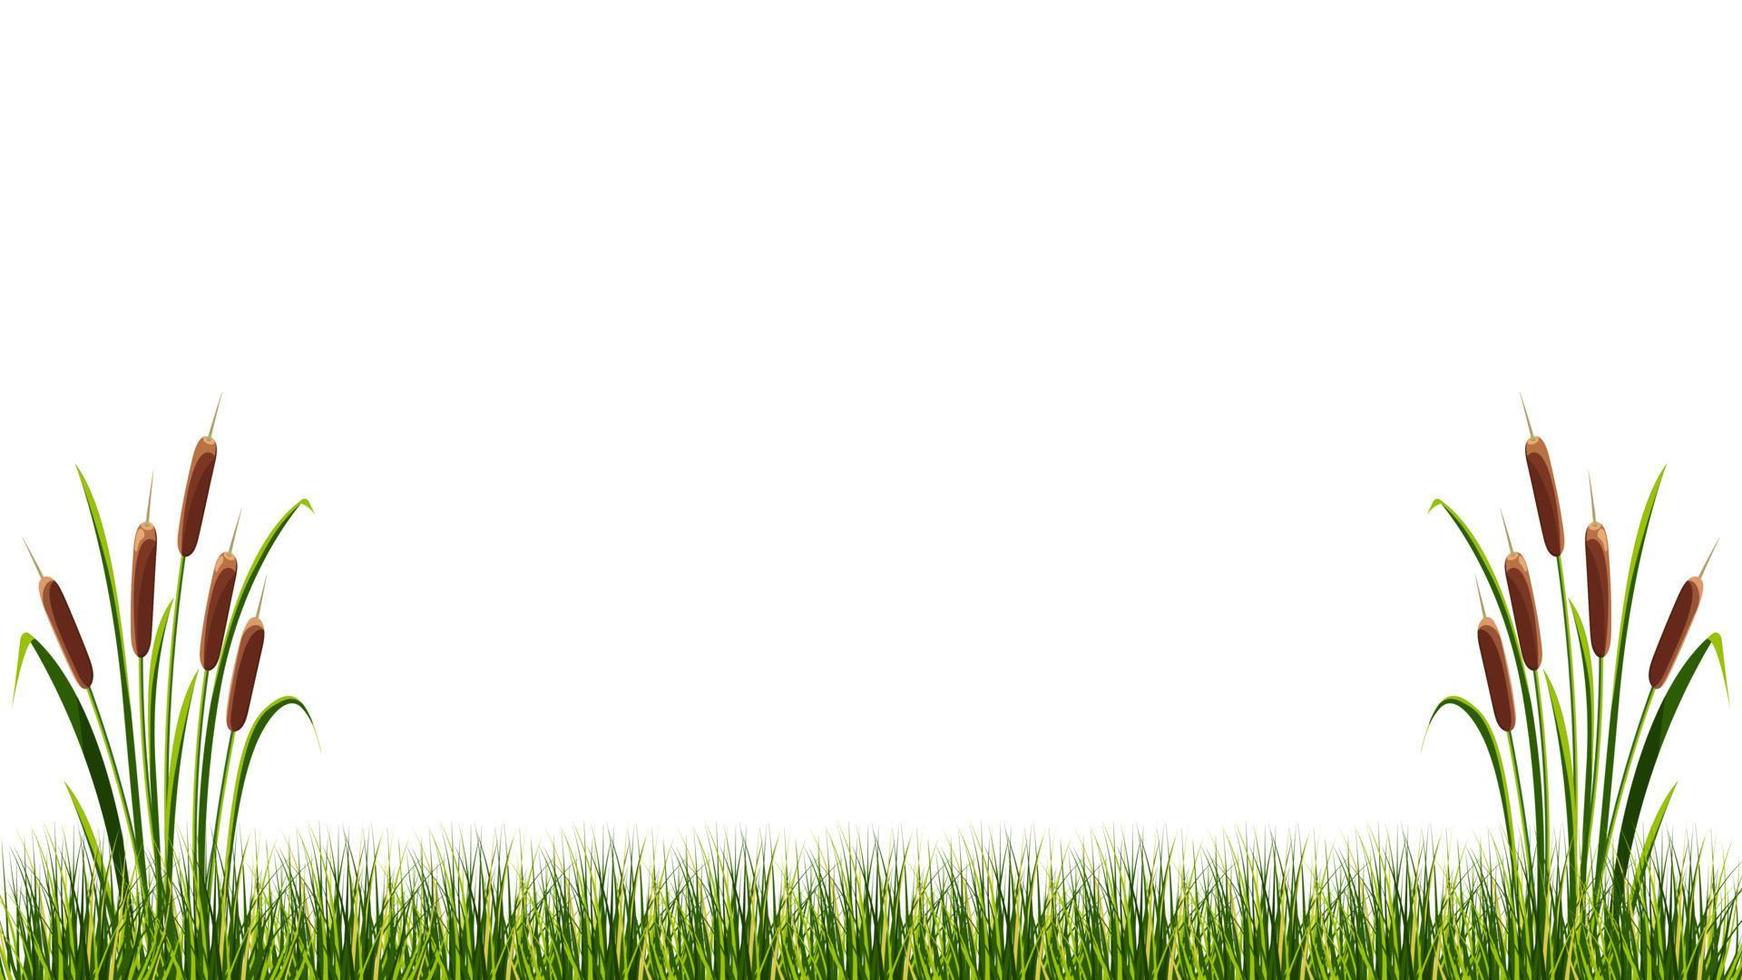 canne in erba palustre su sfondo bianco. illustrazione vettoriale del paesaggio estivo.